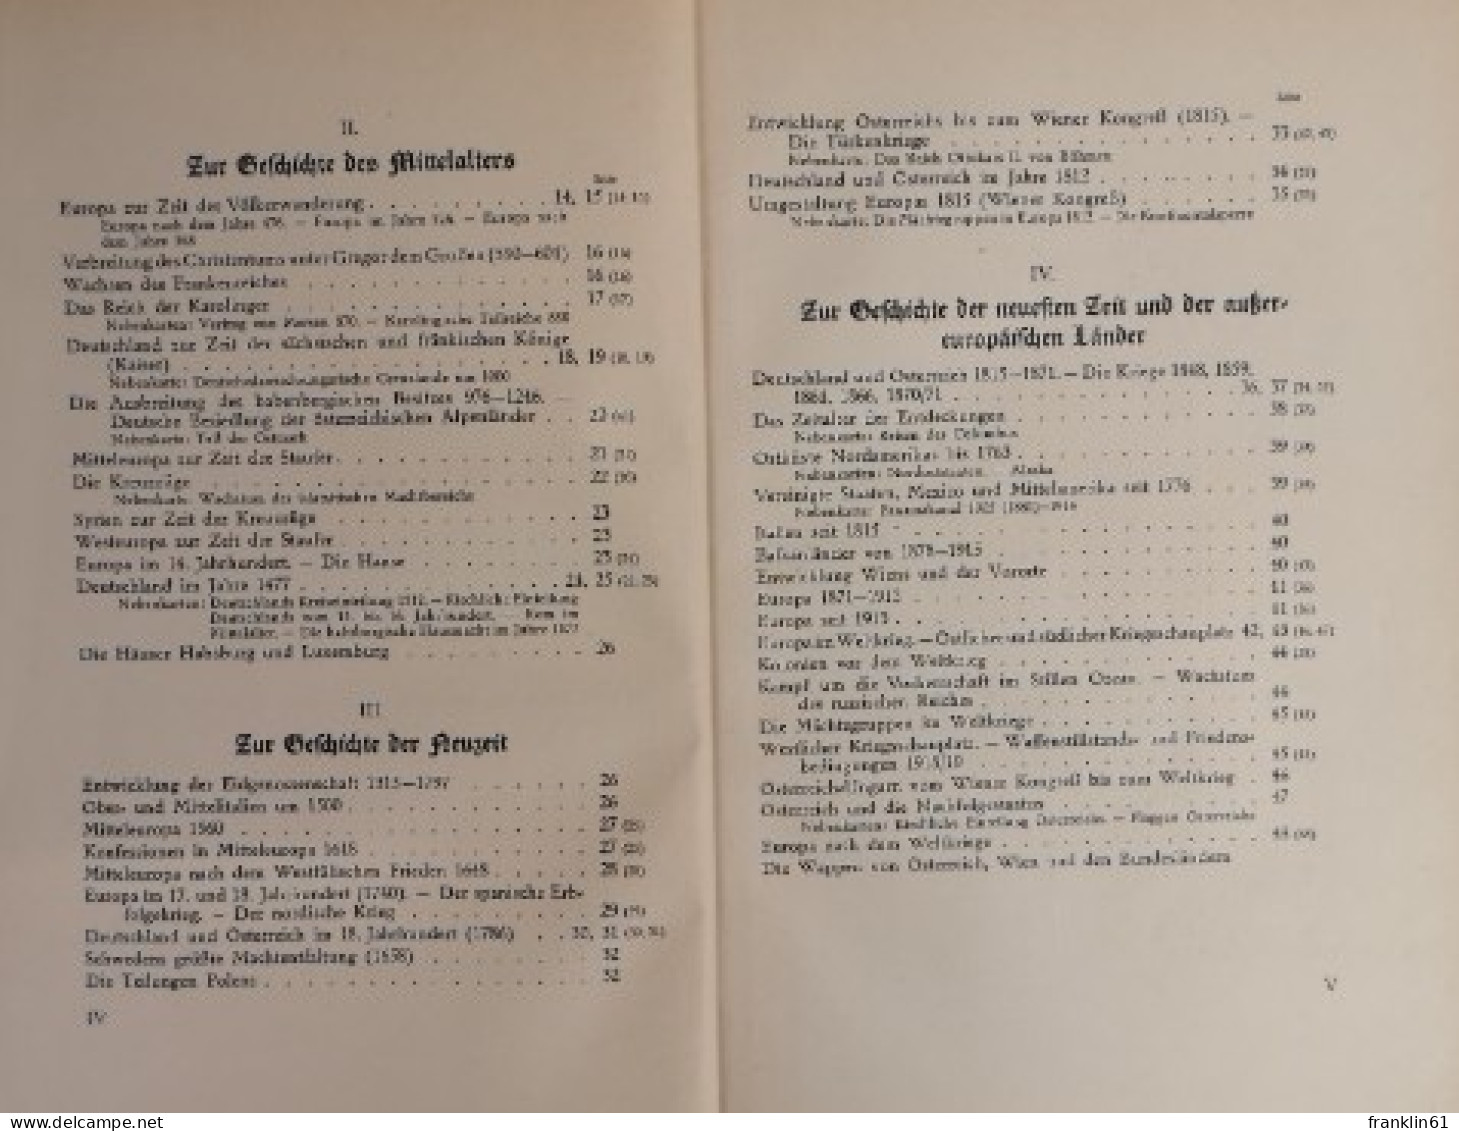 F. W. Putzger. Historischer Schul-Atlas. - Mapamundis